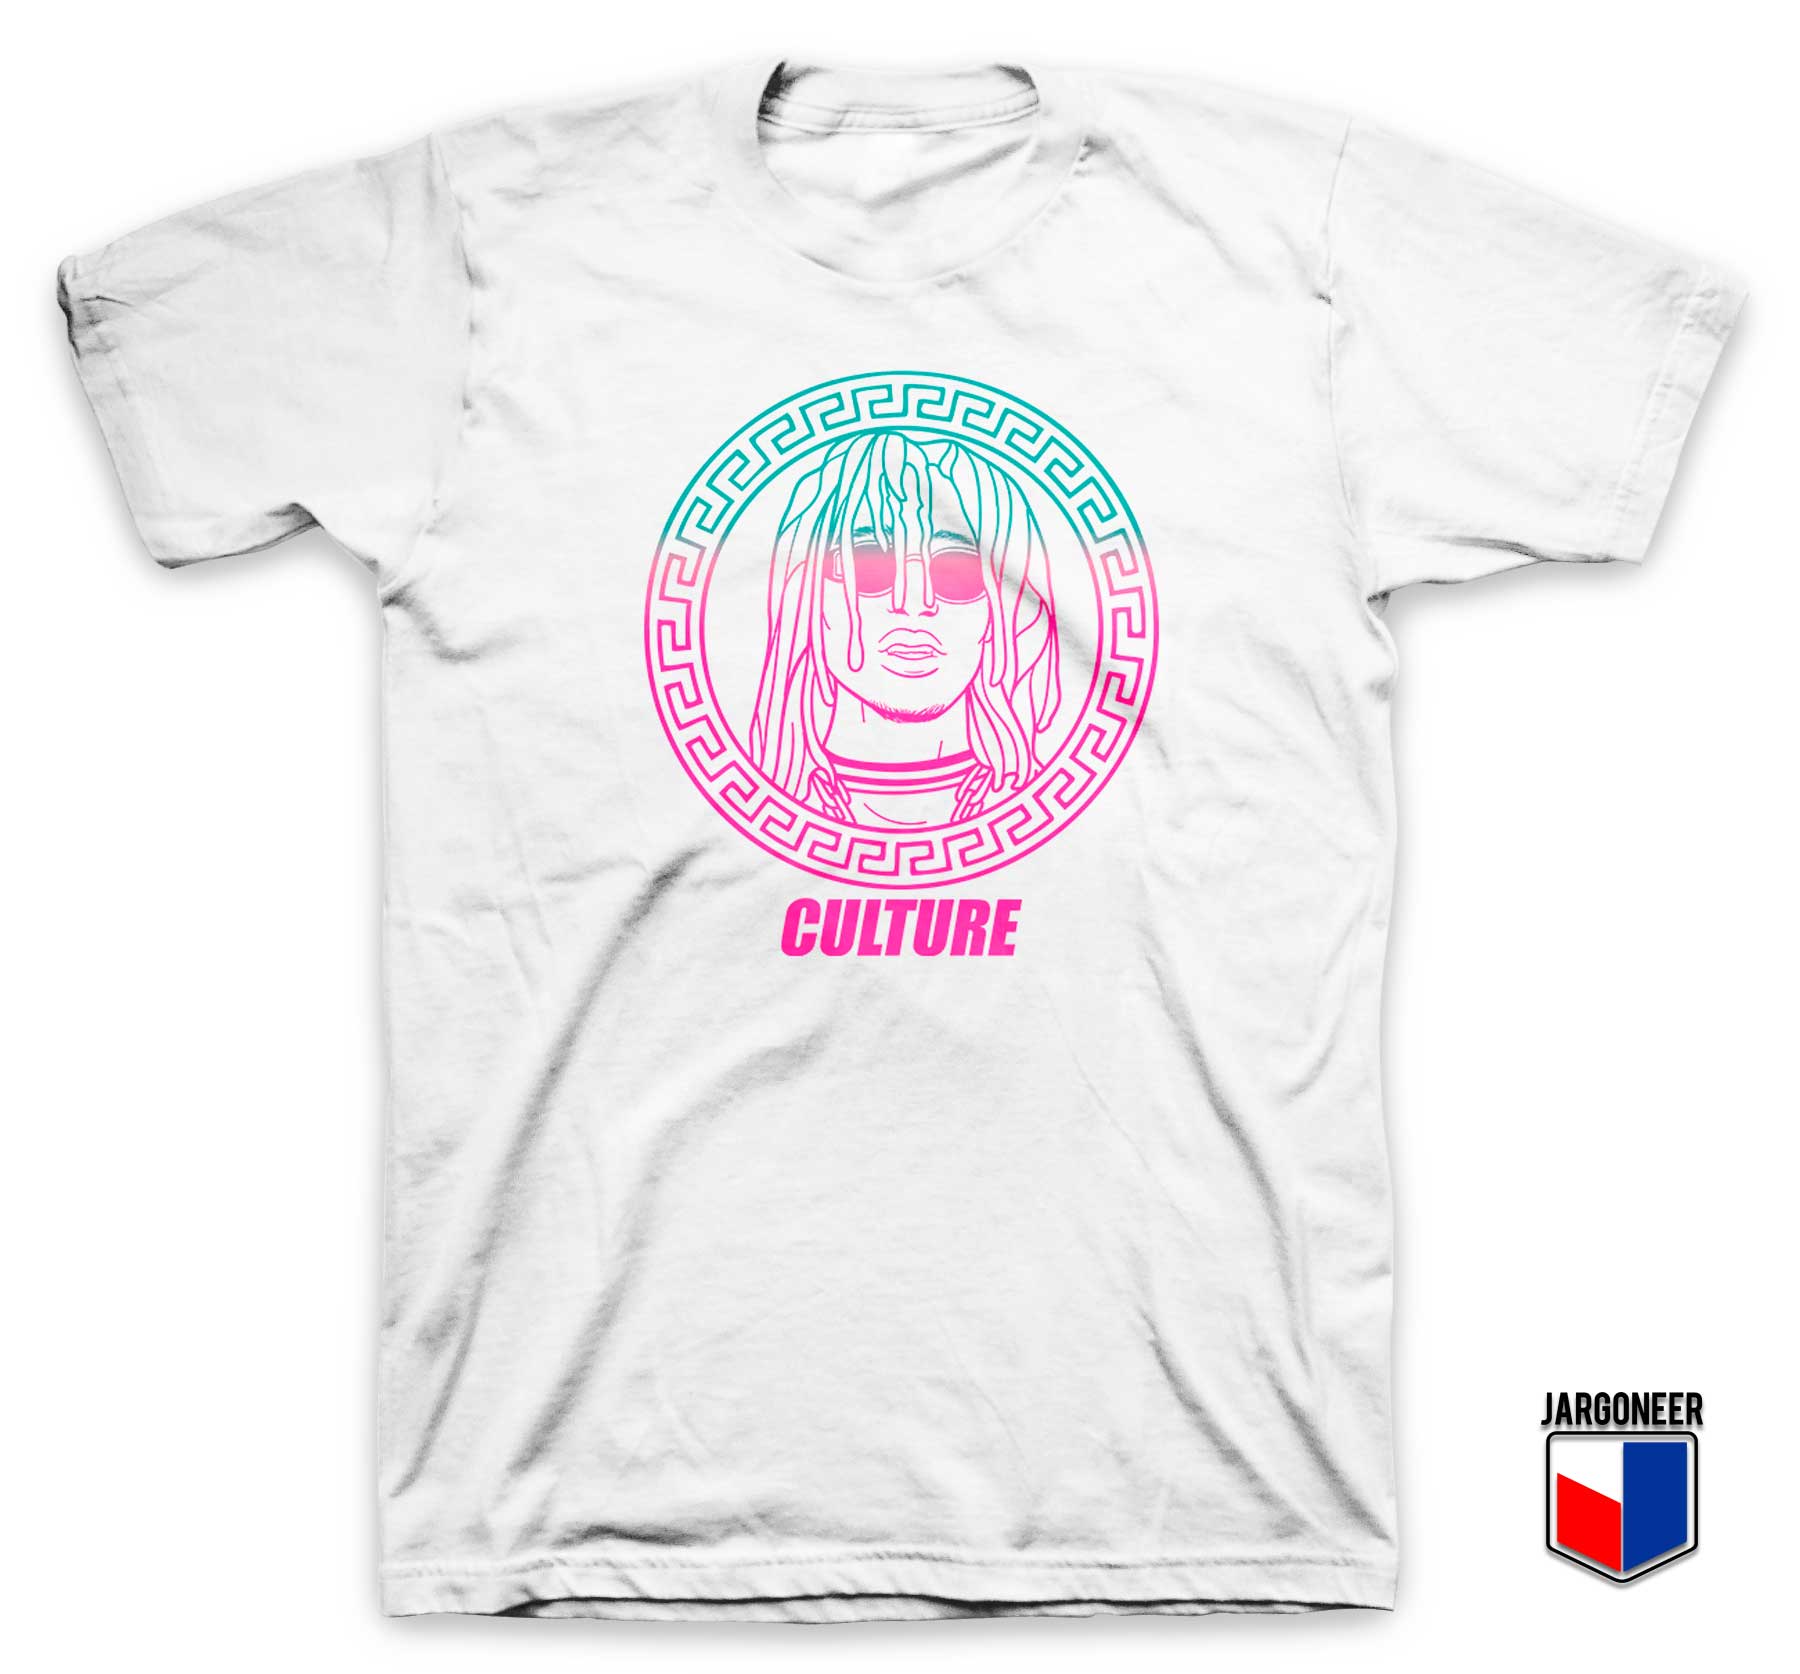 Migos Culture Gucci Mane T Shirt - Shop Unique Graphic Cool Shirt Designs